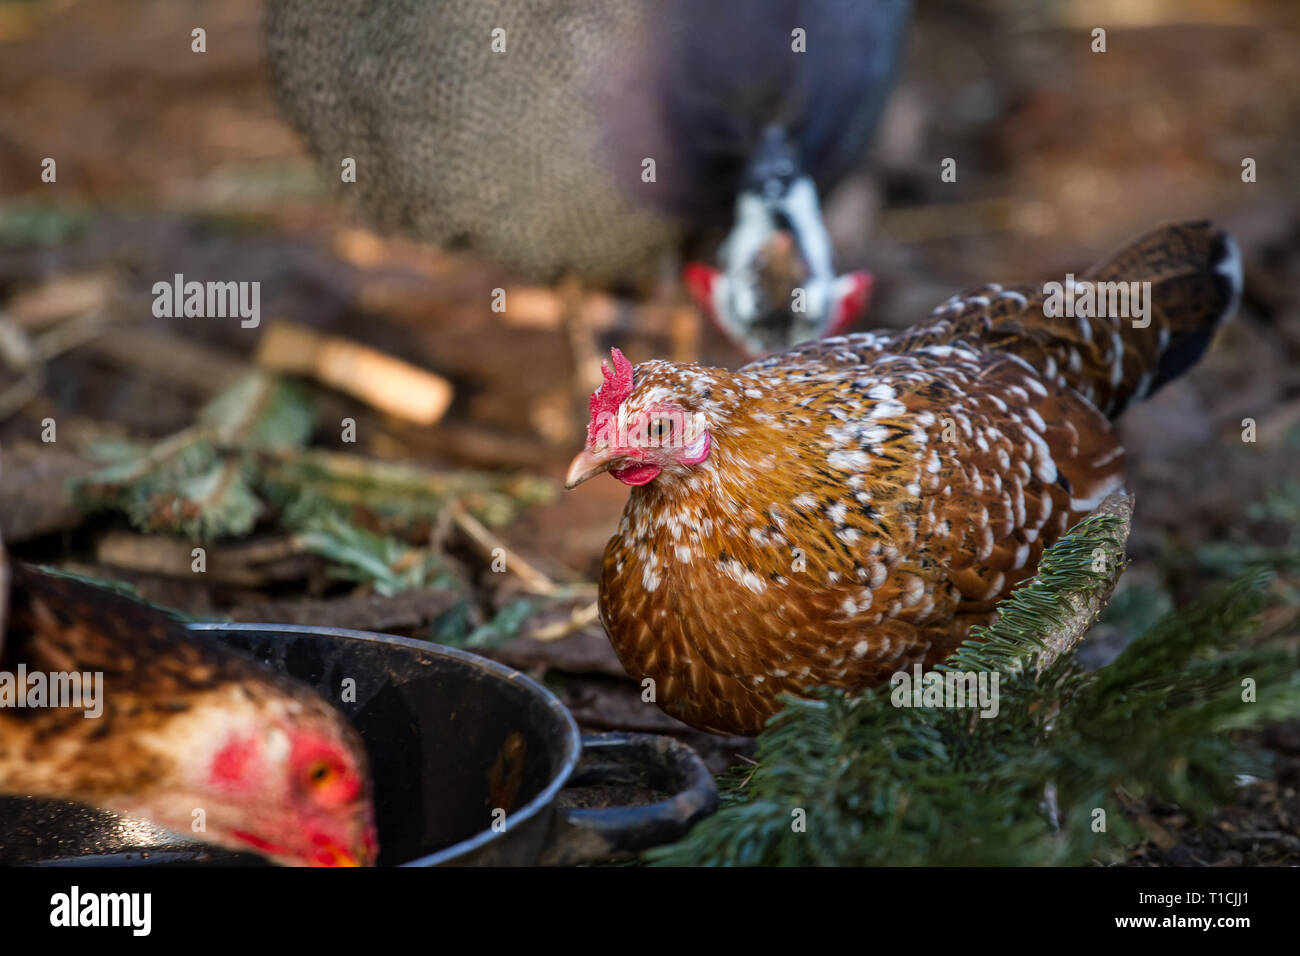 Stoapiperl/Steinhendl (Gallus gallus domesticus), einer vom Aussterben bedrohten Rasse Huhn aus Österreich Stockfoto